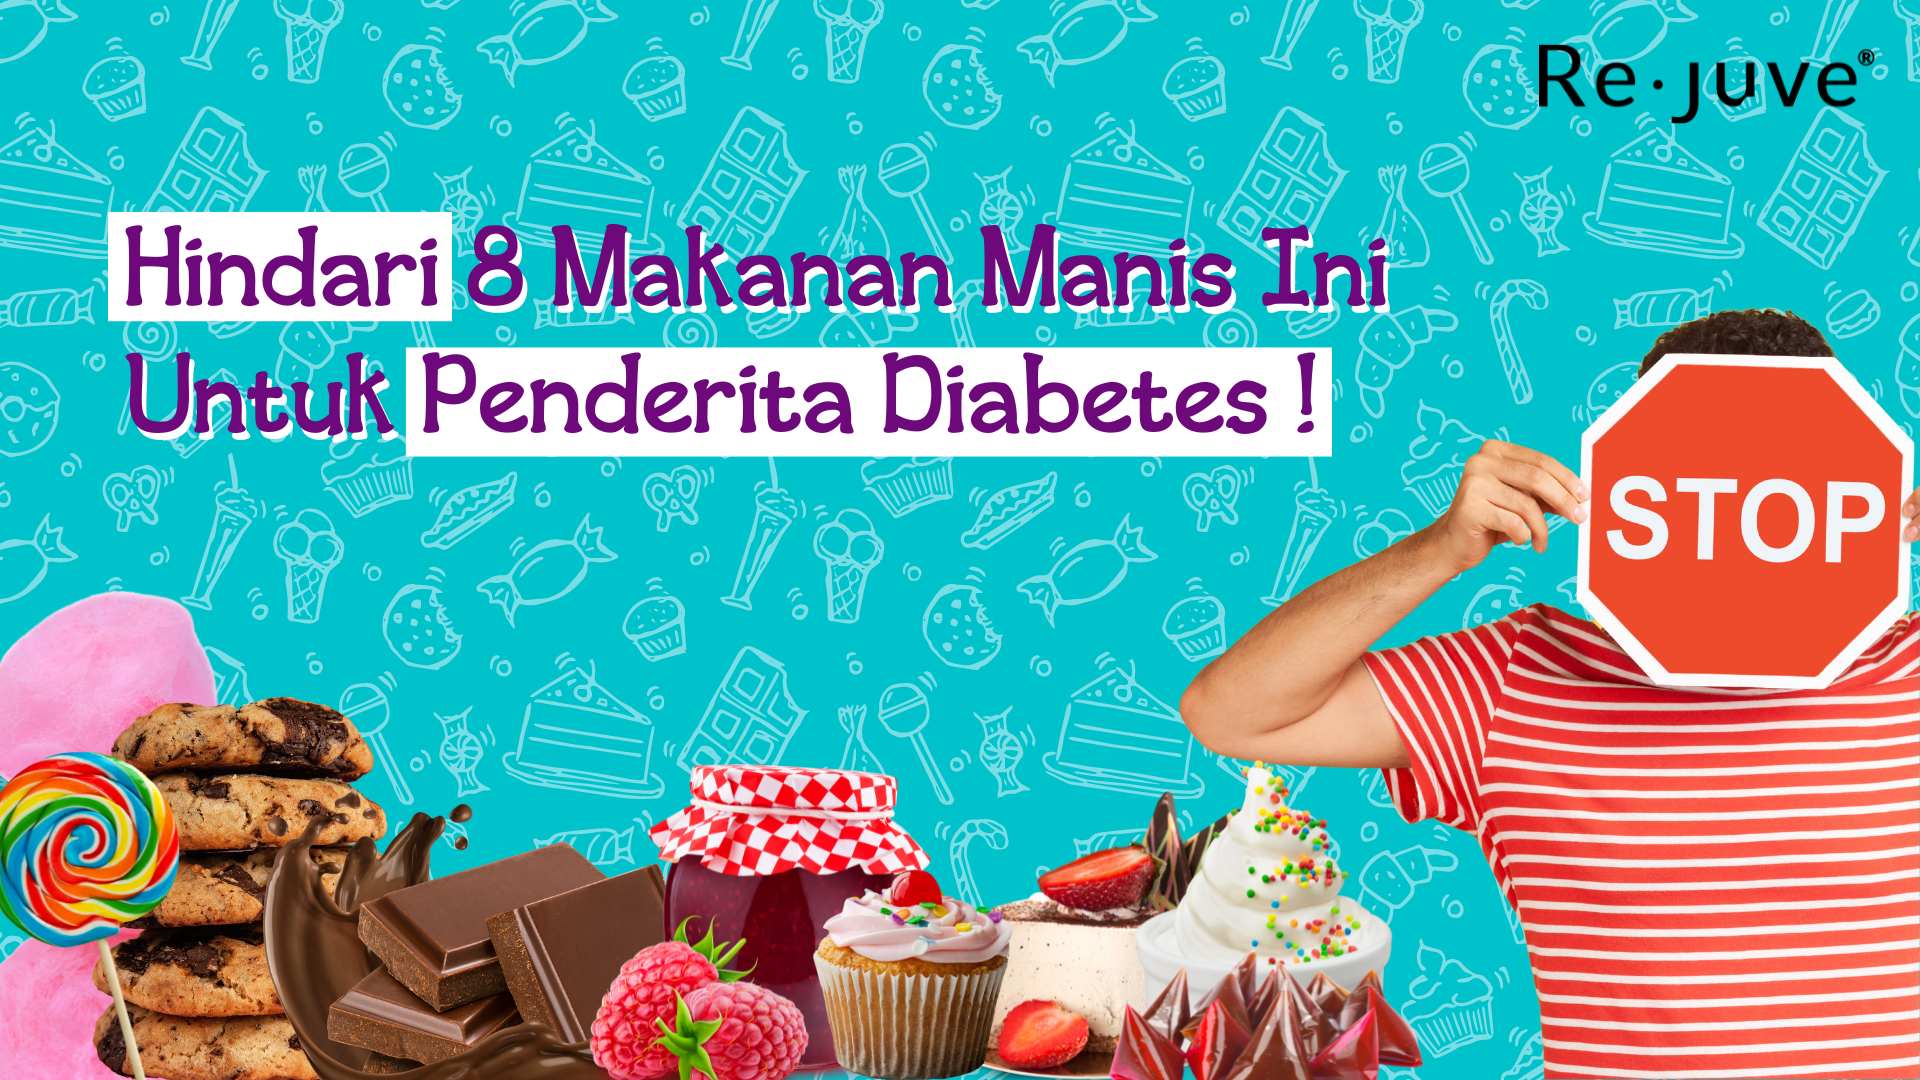 Hindari 8 Makanan Manis Ini Untuk Penderita Diabetes Re.Juve